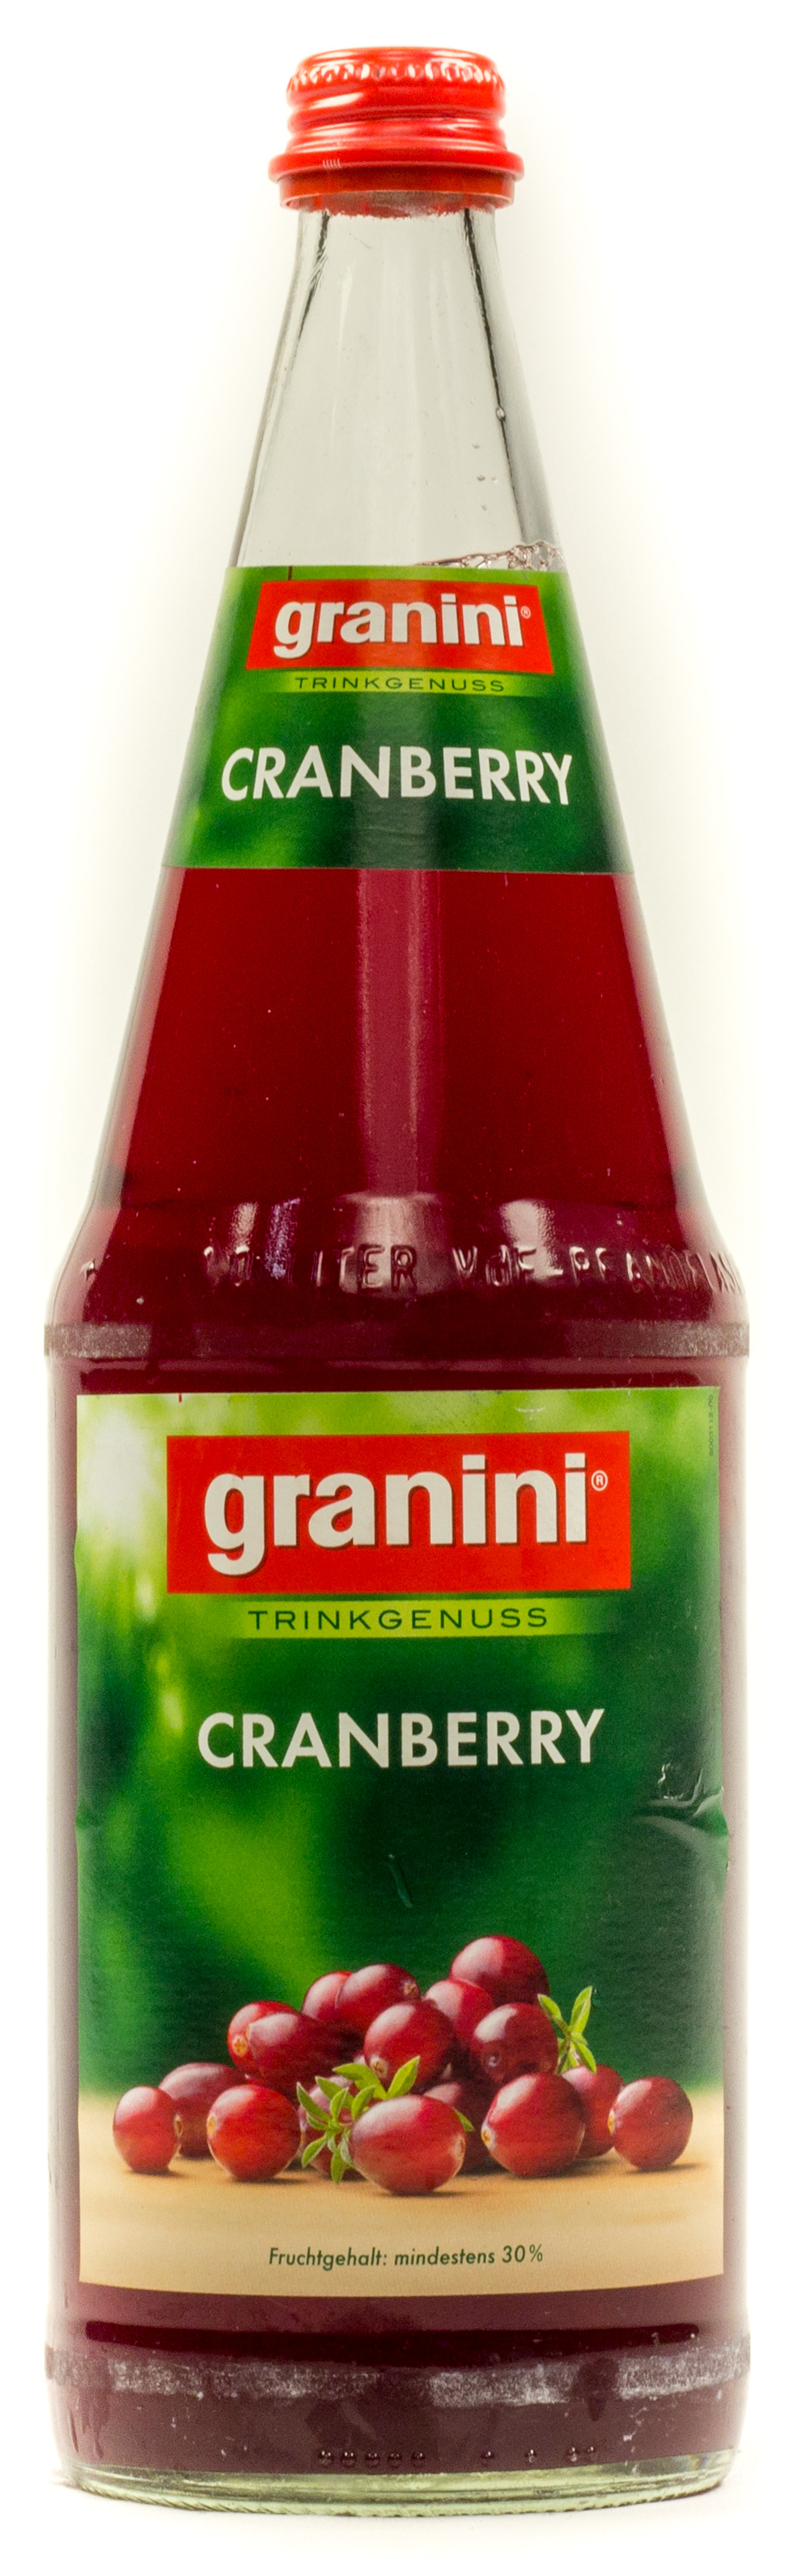 Granini Trinkgenuss Cranberry Kasten 6 x 1 l Glas Mehrweg